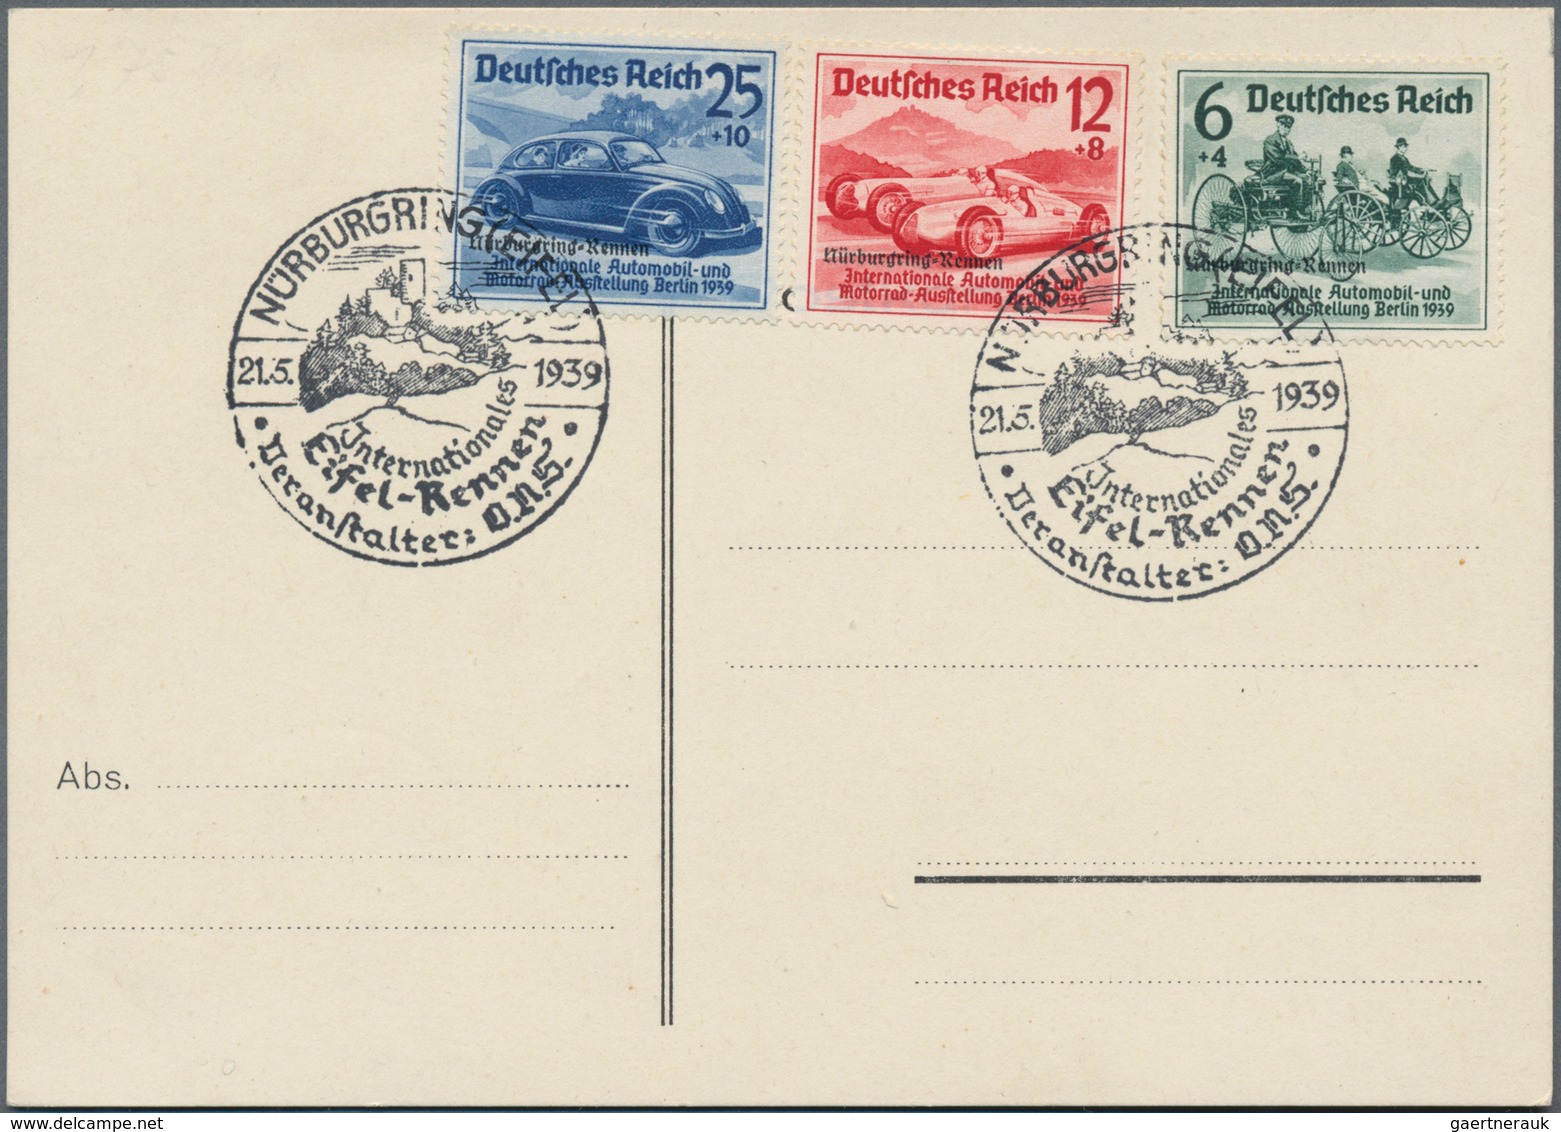 Deutsches Reich - 3. Reich: 1936/1945, SONDERSTEMPEL, Posten von ca. 350 Briefen und Karten, meist b